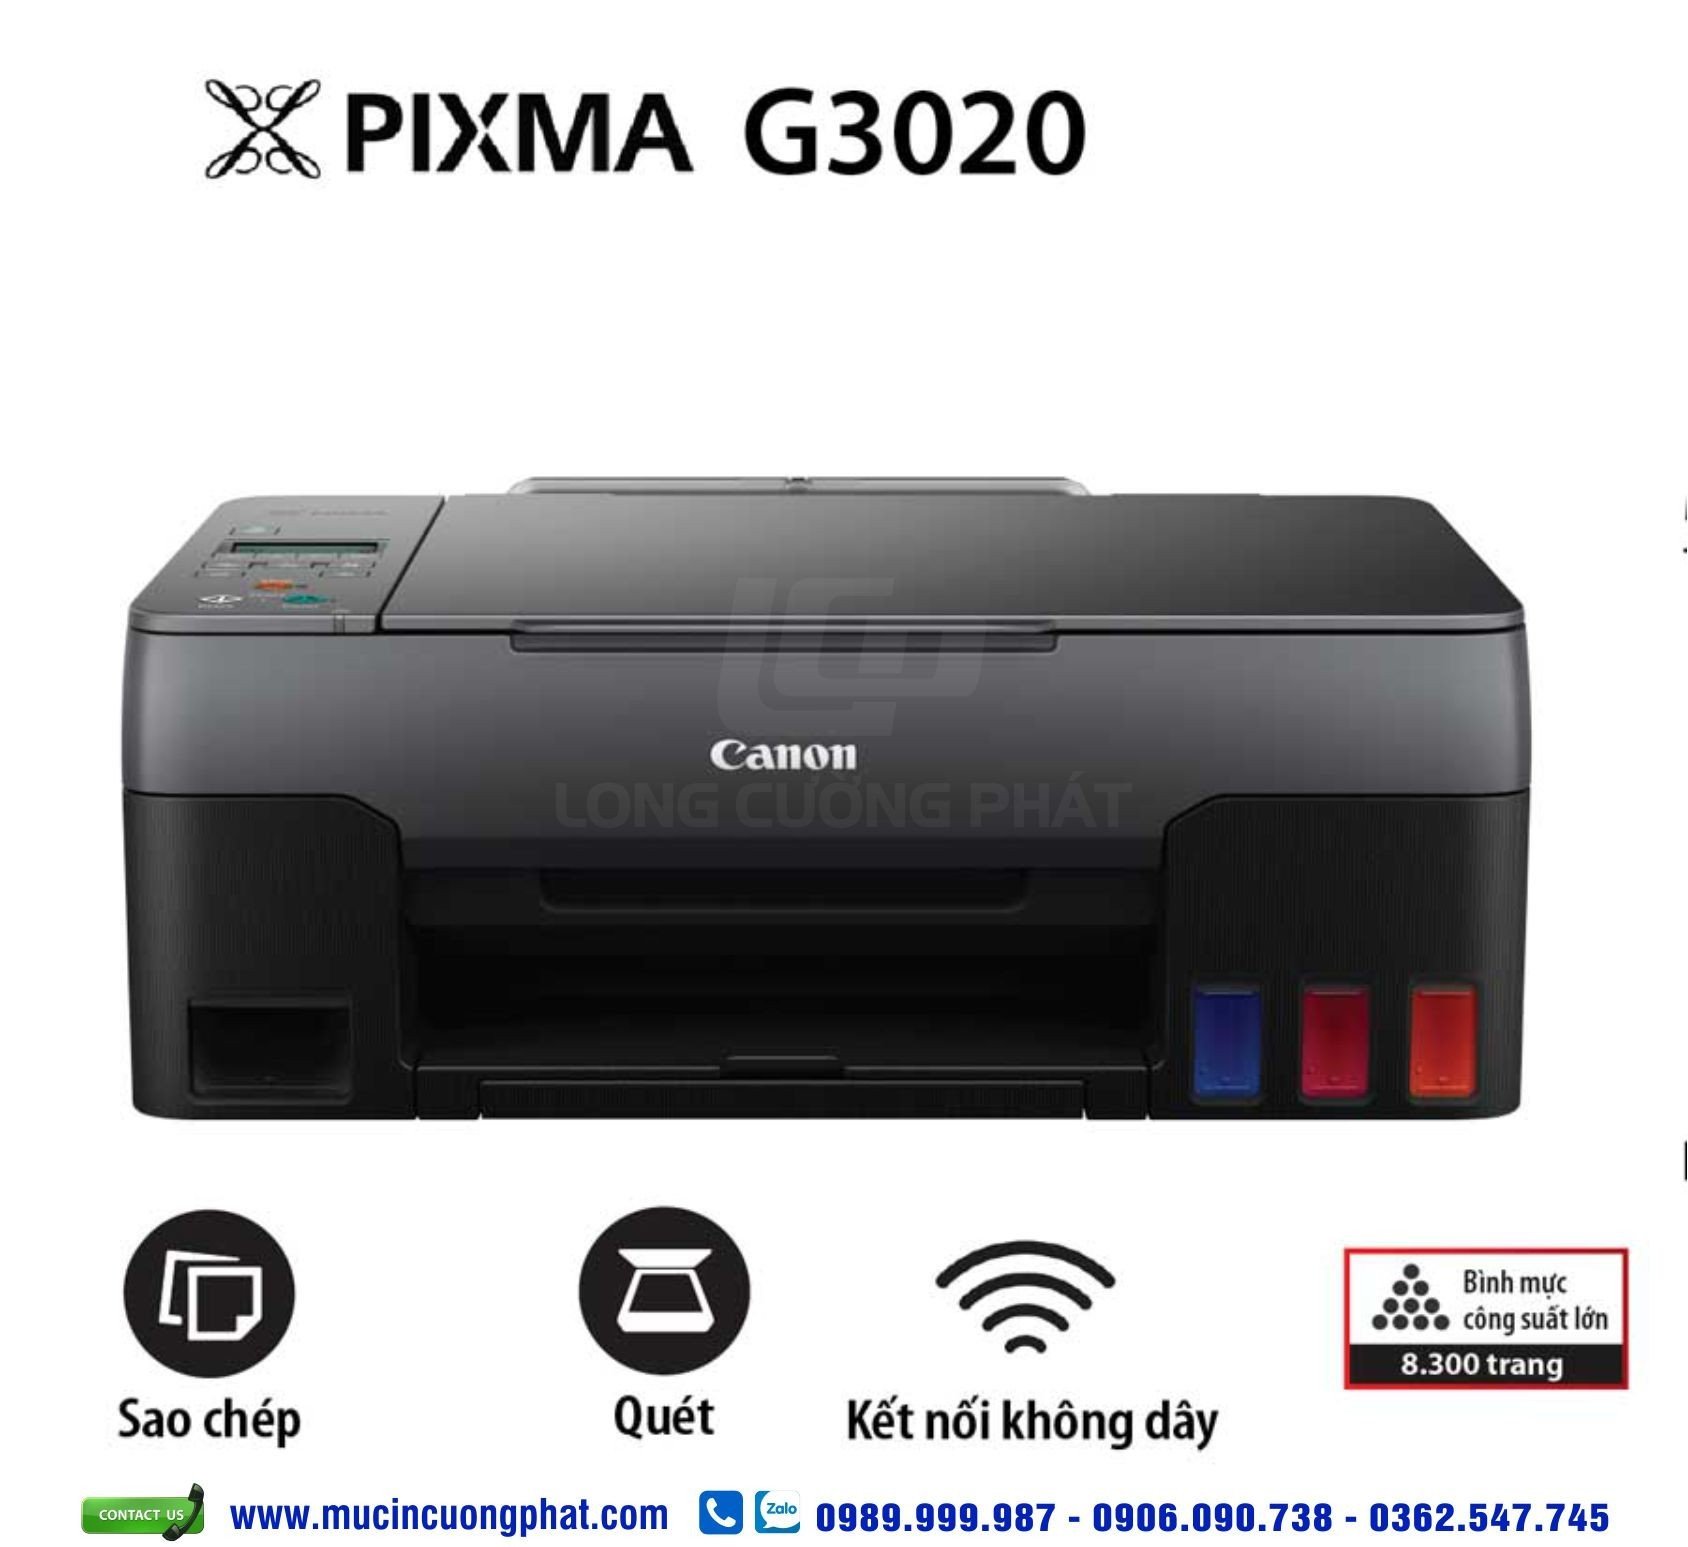 Máy in màu đa chức năng Canon Pixma G3020 wifi, in scan, copy